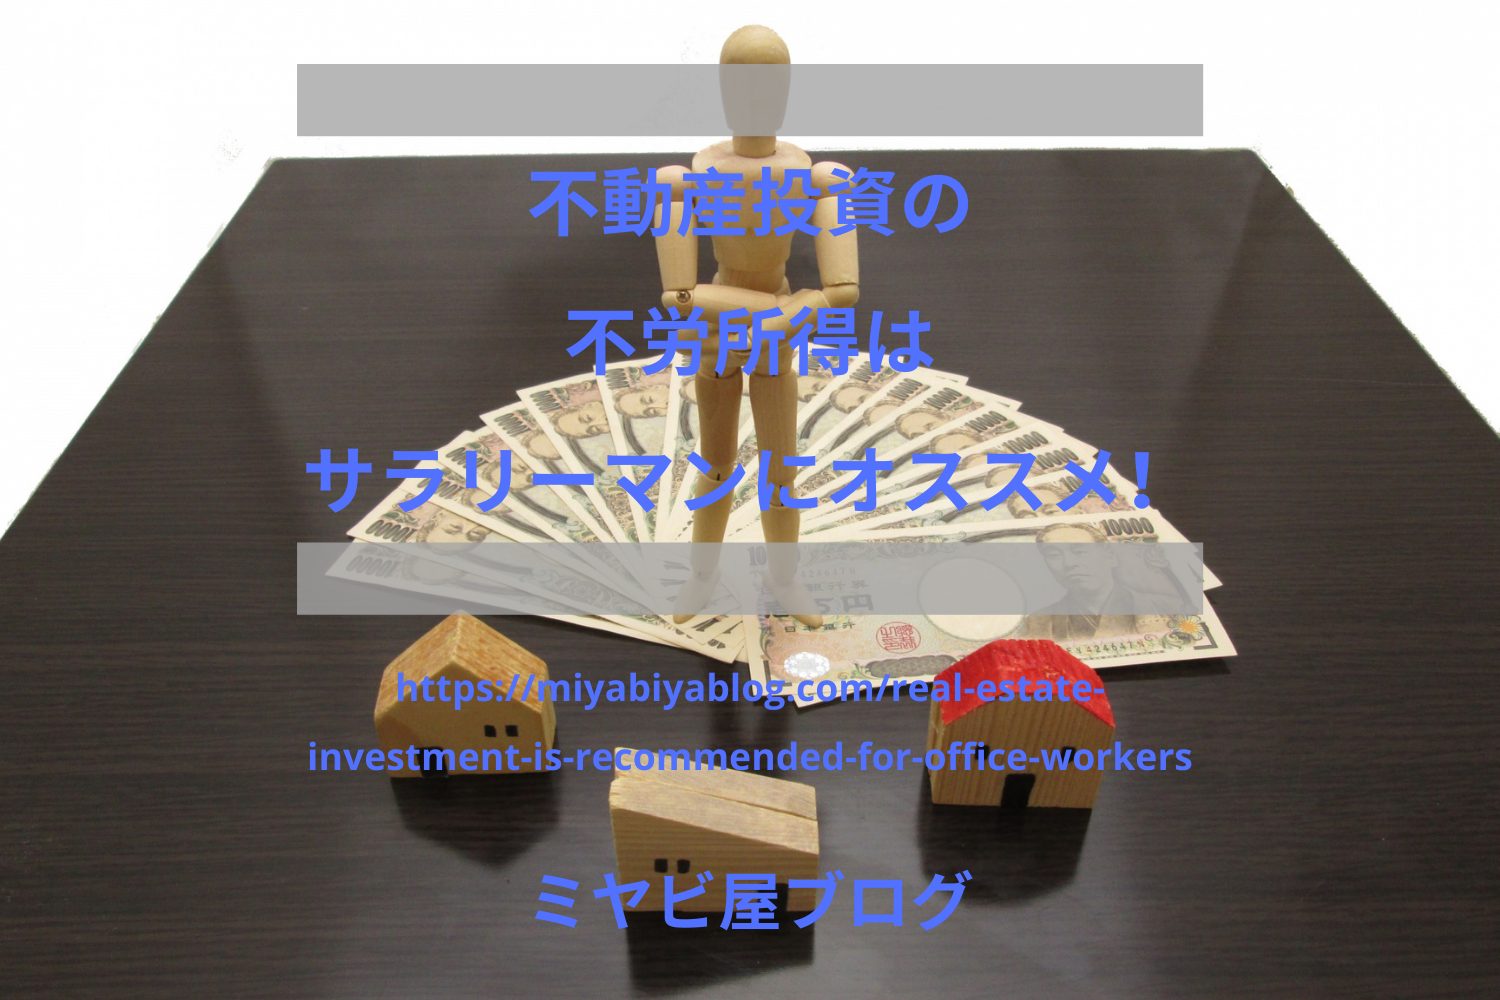 不動産投資の不労所得はサラリーマンにオススメ！のイメージ画像。木彫りの家の模型の後ろに、紙幣が置かれ、その上に人型のフィギュアが立っている。